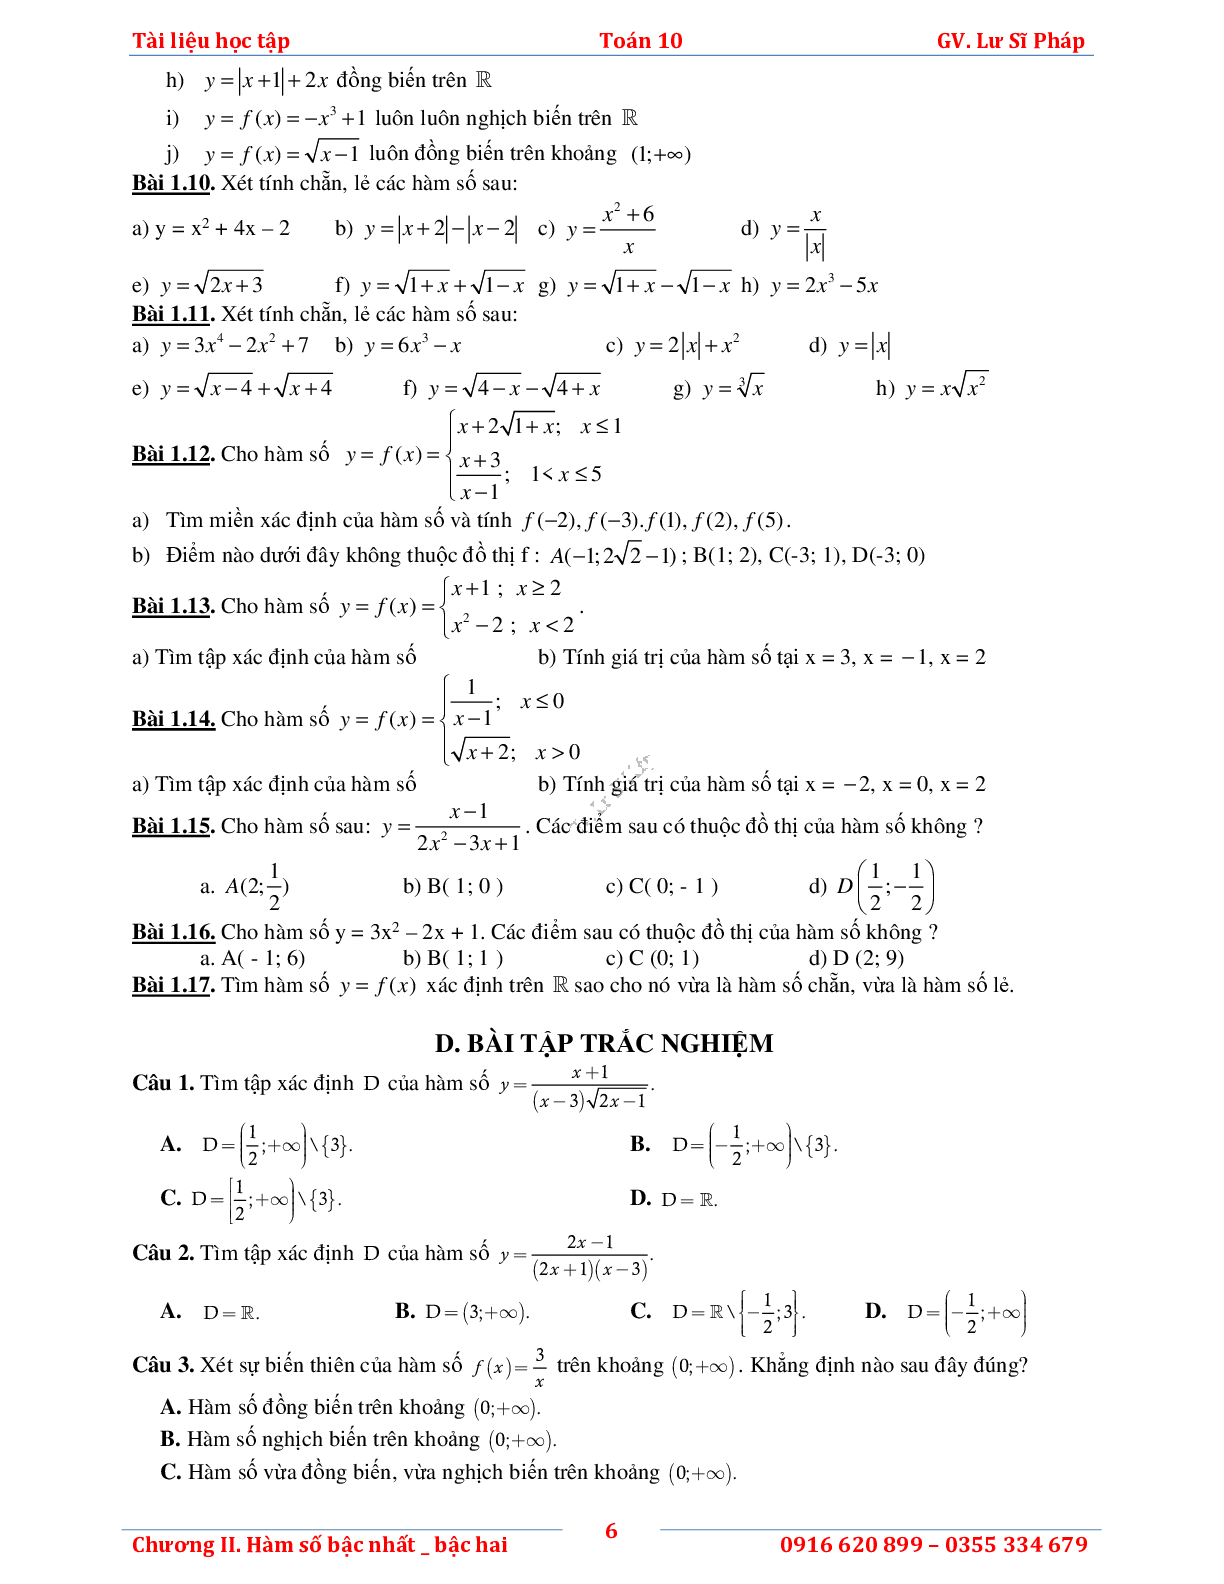 Tài liệu học tập hàm số bậc nhất và bậc hai (trang 10)